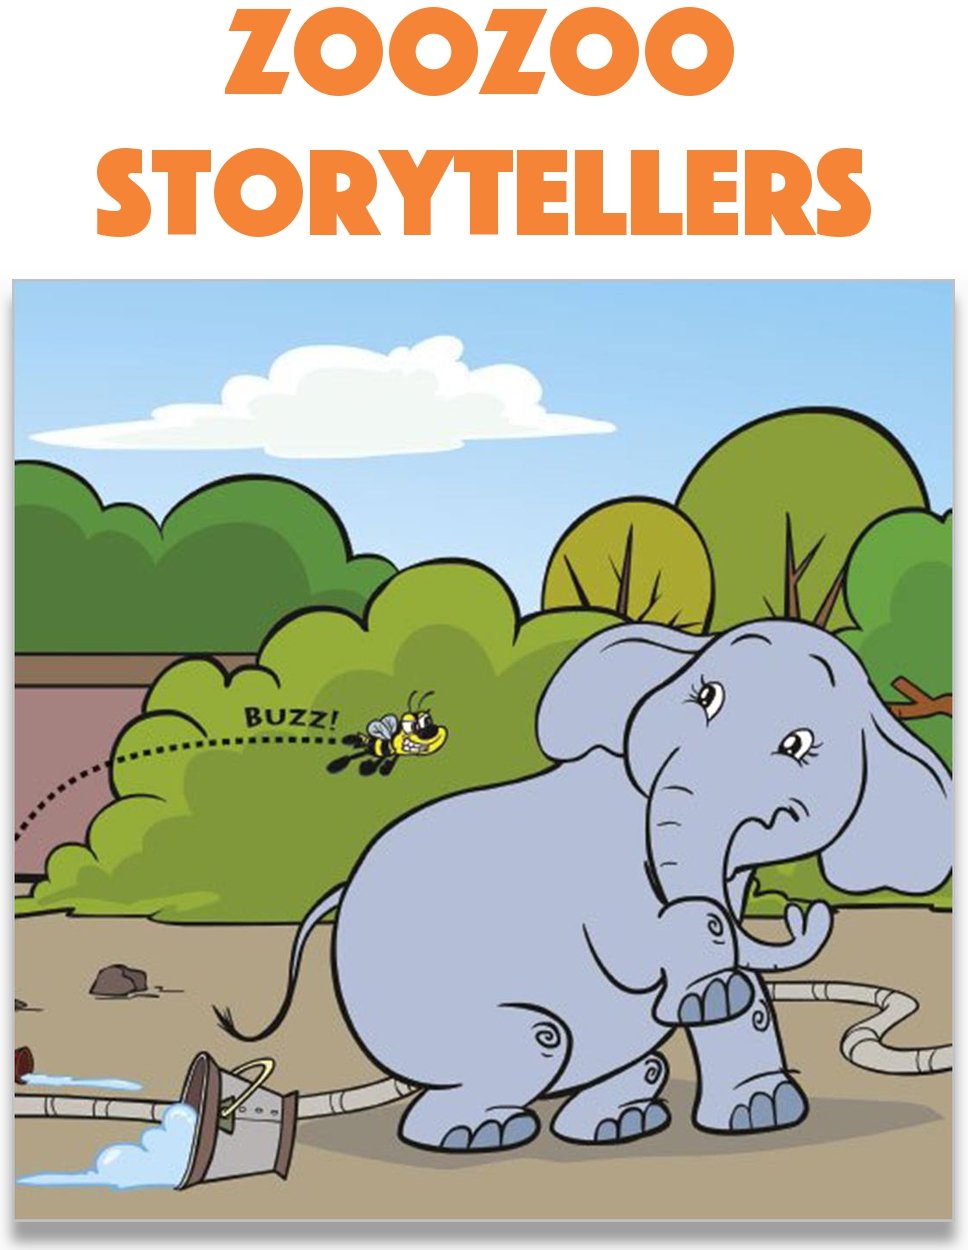 Zoozoo Storytellers